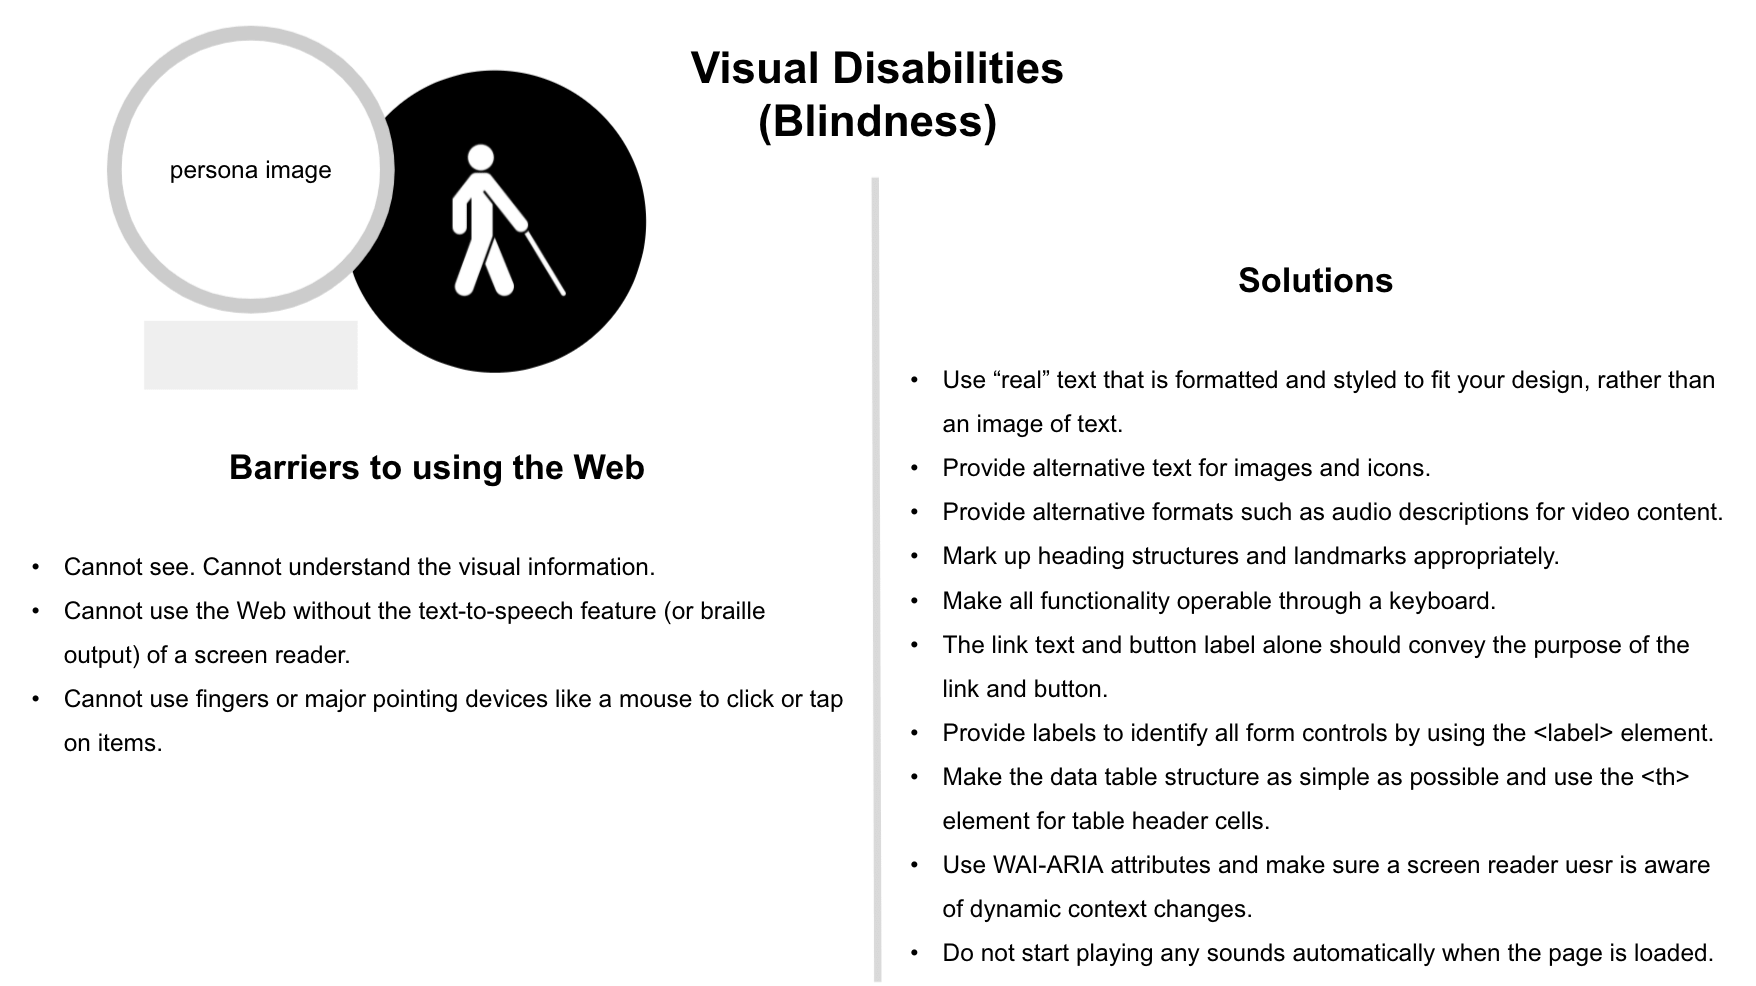 英語版 : 「Visual Disabilities (Blindness)」のシート